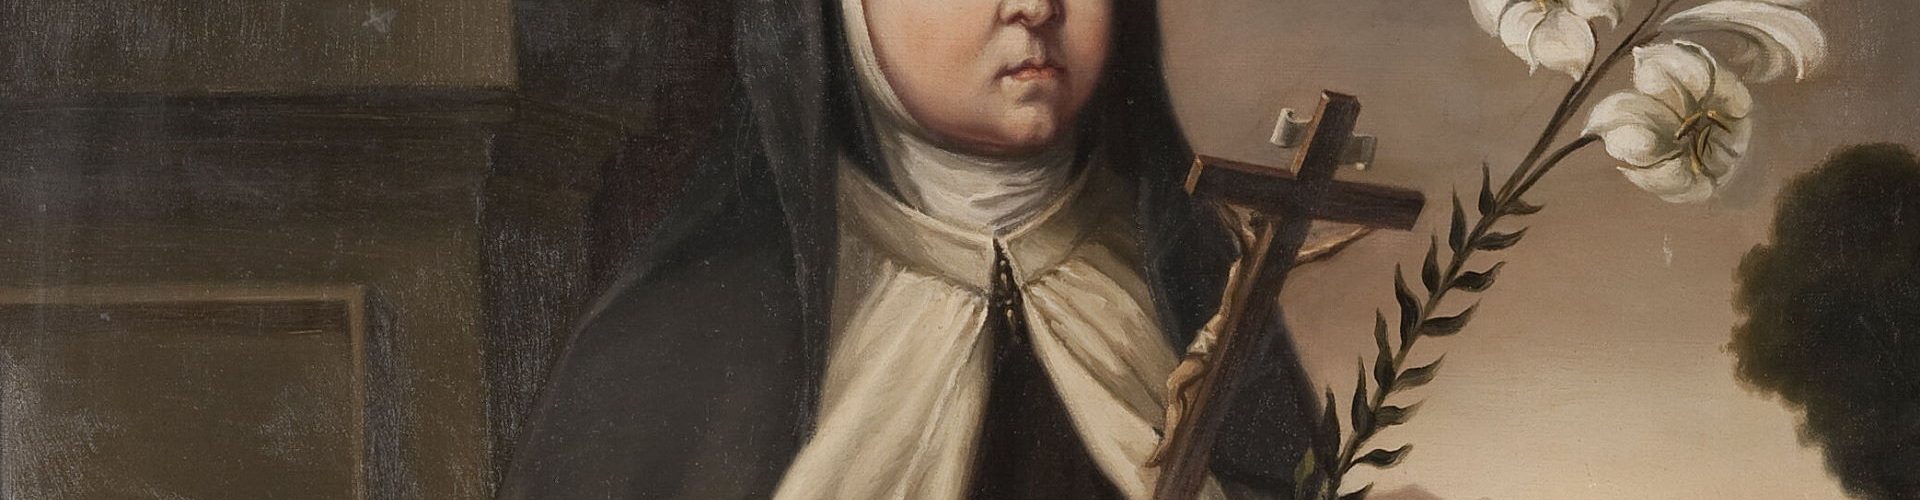 Królewna Maria Anna Teresa w habicie karmelitanki na obrazie powstałym w 1651 roku. W rzeczywistości dziewczynka nigdy nie osiągnęła takiego wieku i nie trafiła do zakonu